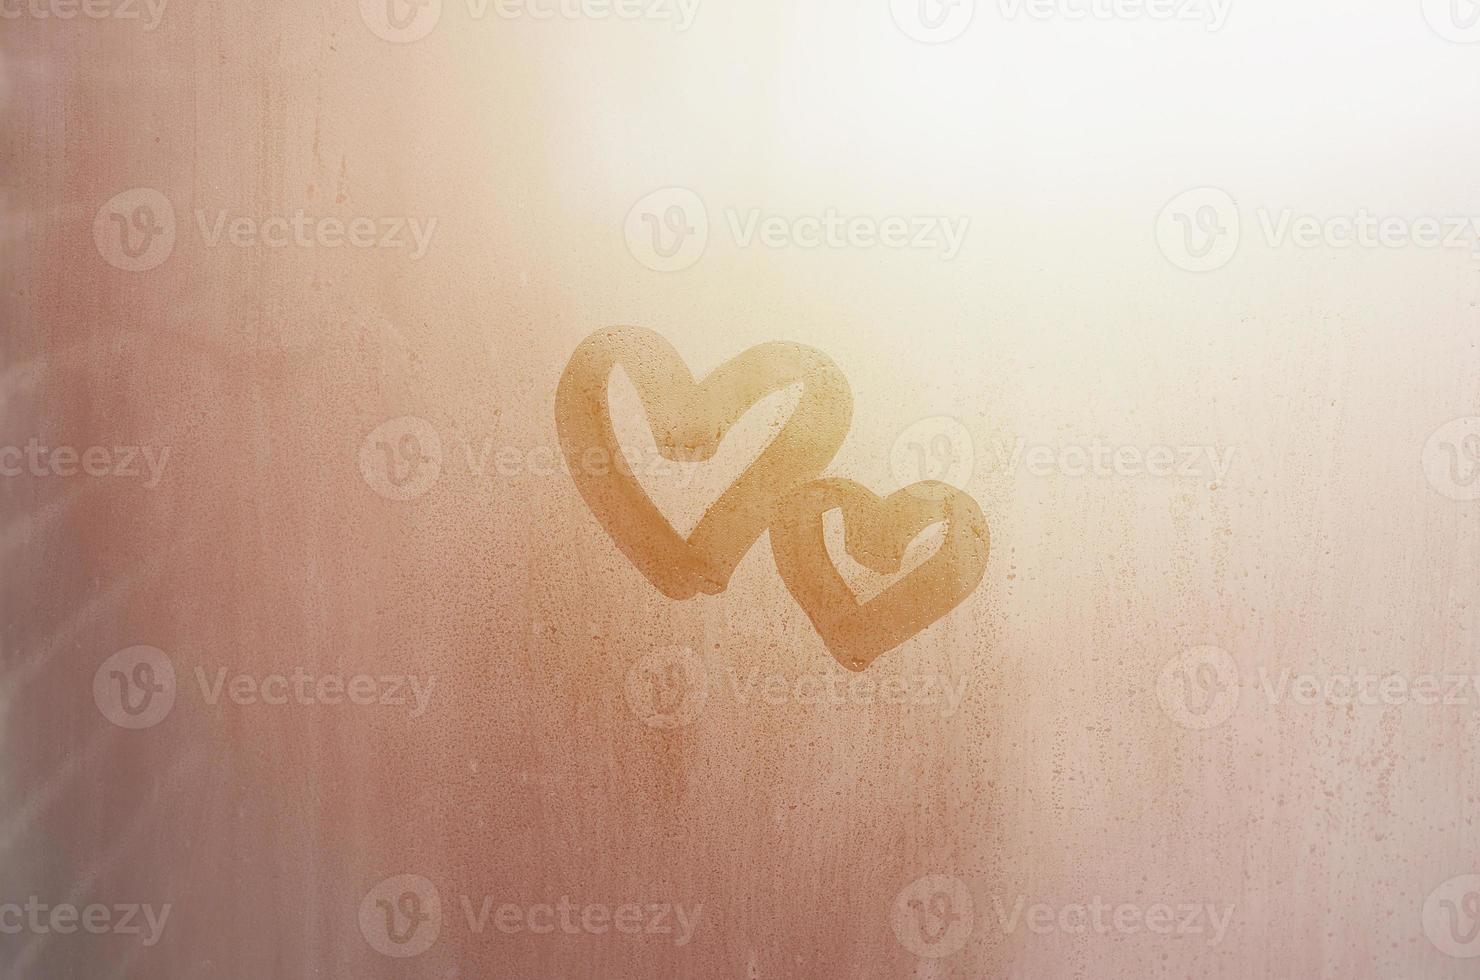 Ein paar abstrakte unscharfe Liebesherzsymbole, die von Hand auf das nasse Fensterglas mit Sonnenlichthintergrund gezeichnet wurden. vorlage für valentinstagpostkarten foto